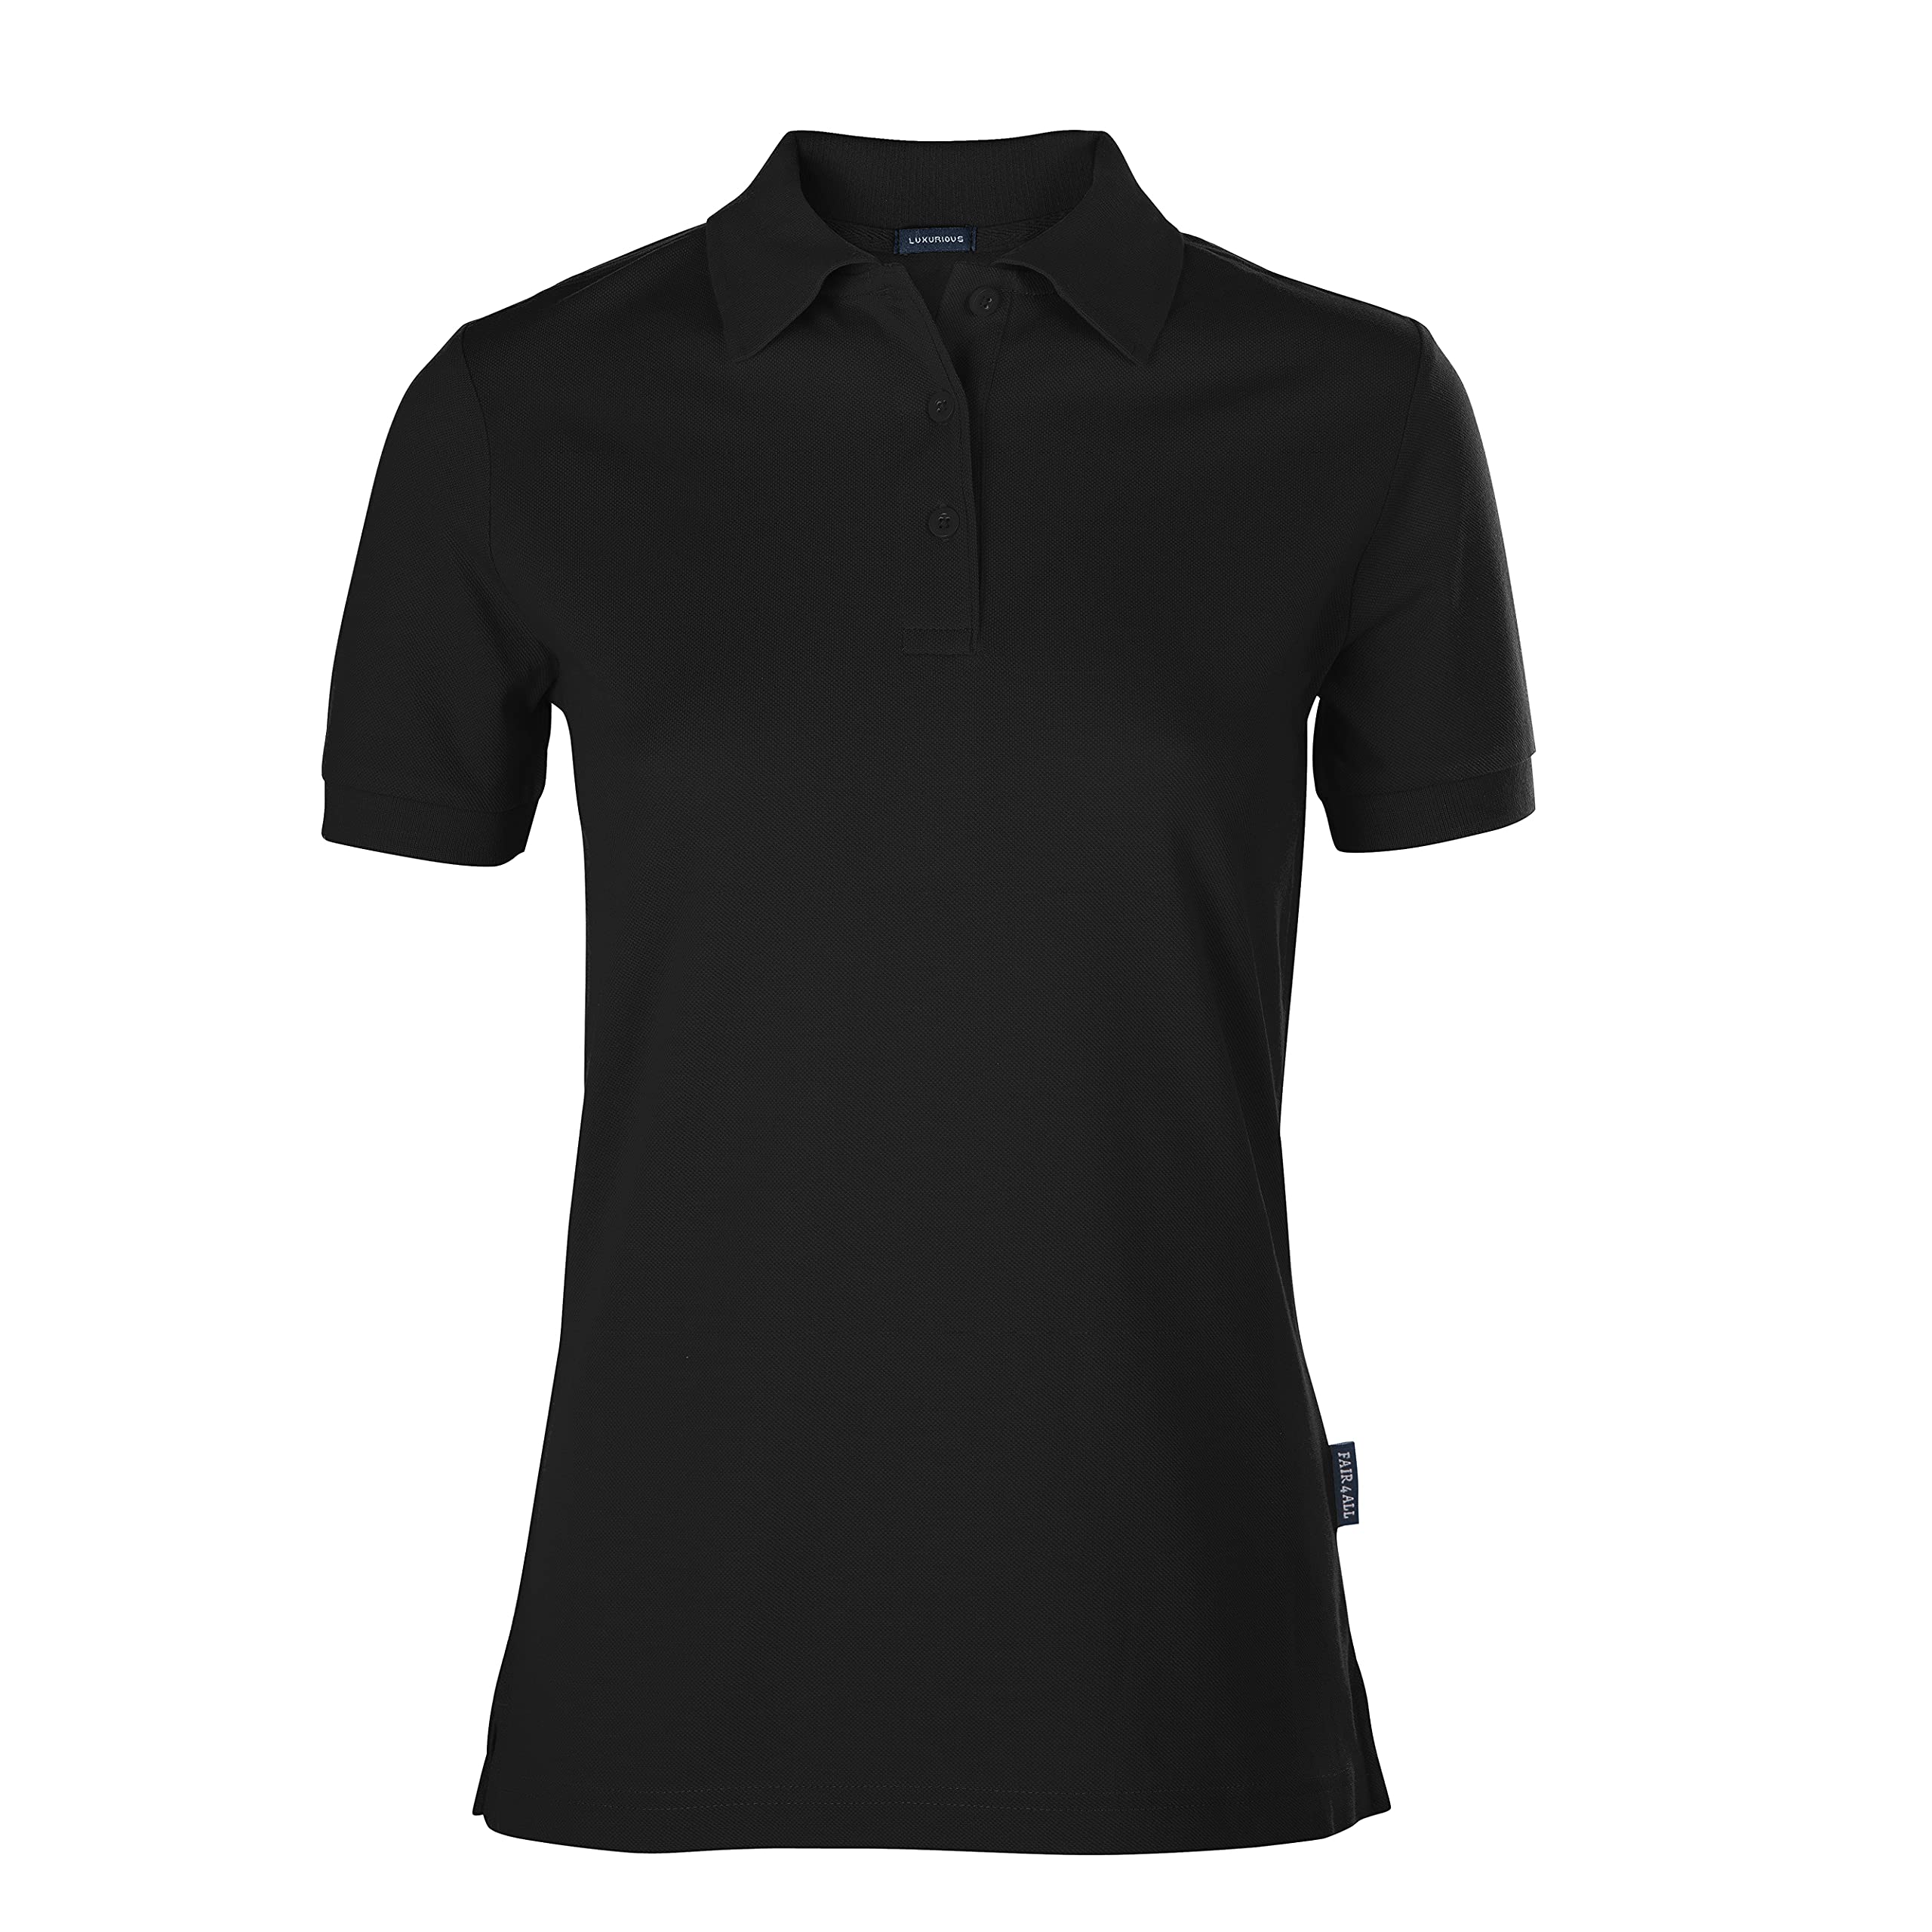 HRM Damen Luxury Polo, schwarz, Gr. 4XL I Premium Polo-Shirt Damen aus 100% Baumwolle I Basic Polohemd bis 60°C farbecht waschbar I Hochwertige & nachhaltige Damen-Oberteile